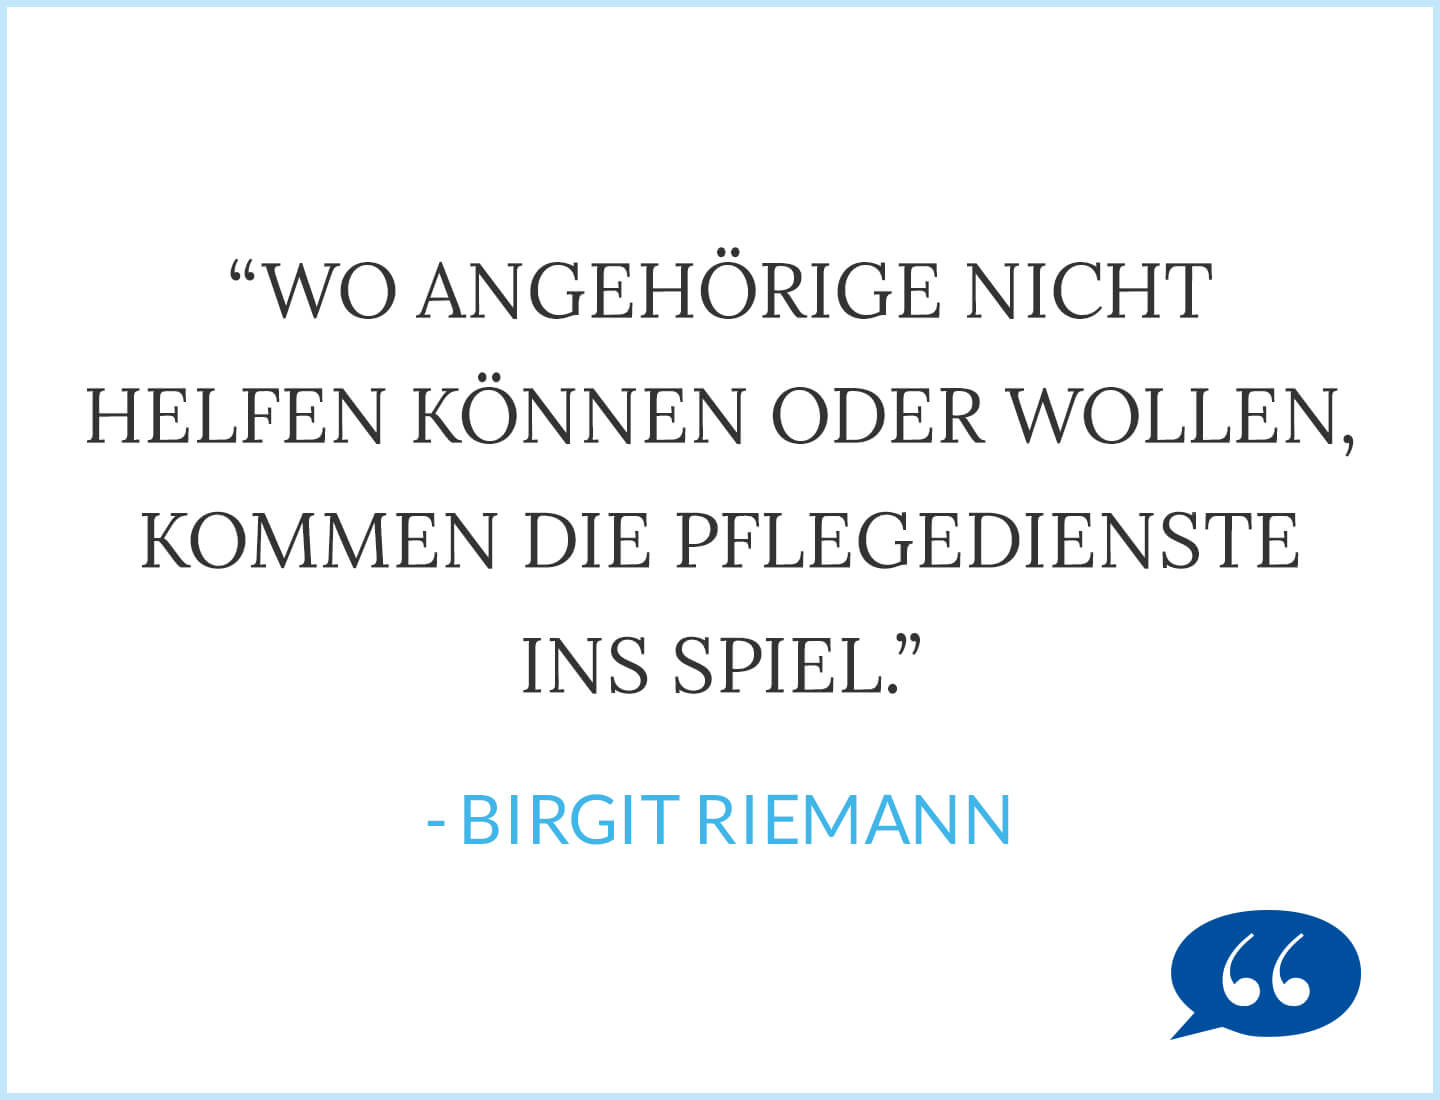 Zitat: Wo Angehörige nicht helfen können oder wollen, kommen die Pflegedienste ins Spiel - Birgit Riemann